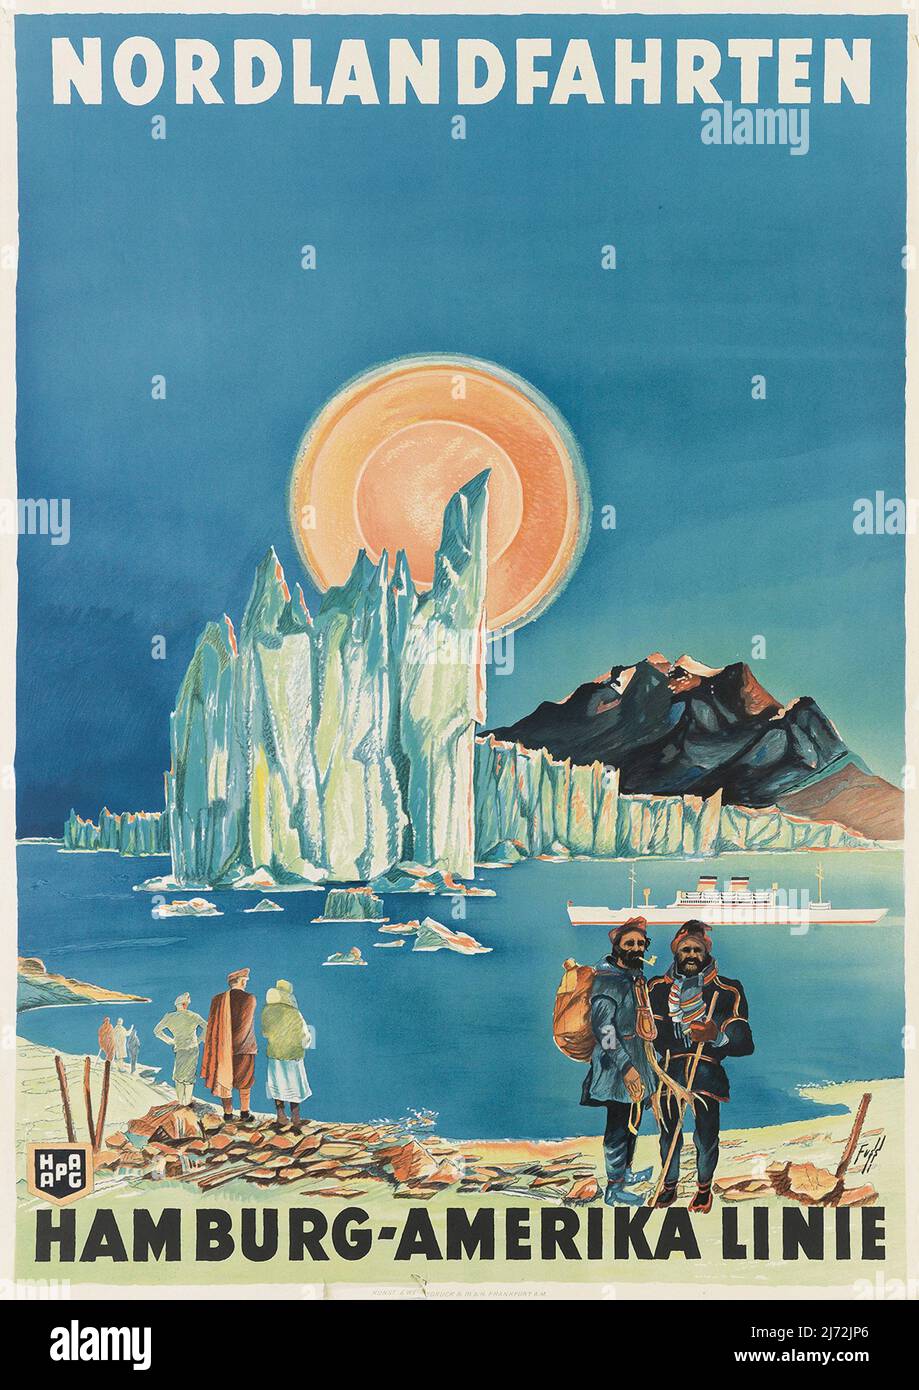 Affiche originale pour la Hamburg America Line - le pôle Nord et l'Arctique - Hambourg Amerika Linie Croisieres aux pays du Nord -1936 Banque D'Images